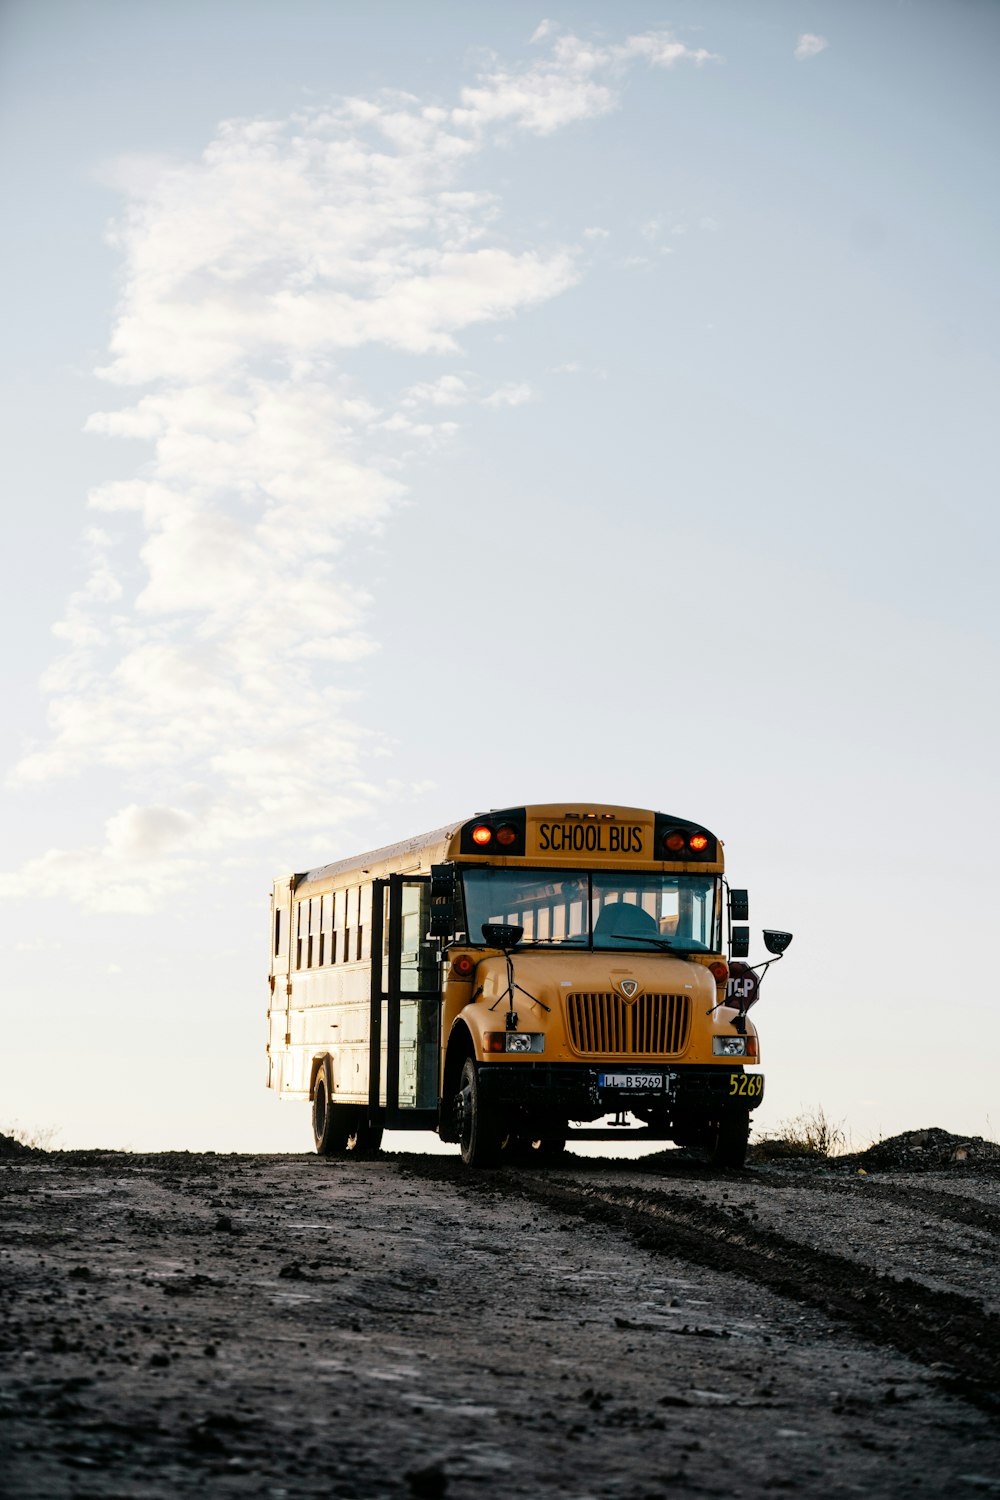 autobus scolaire jaune sur un sol enneigé sous un ciel nuageux blanc pendant la journée